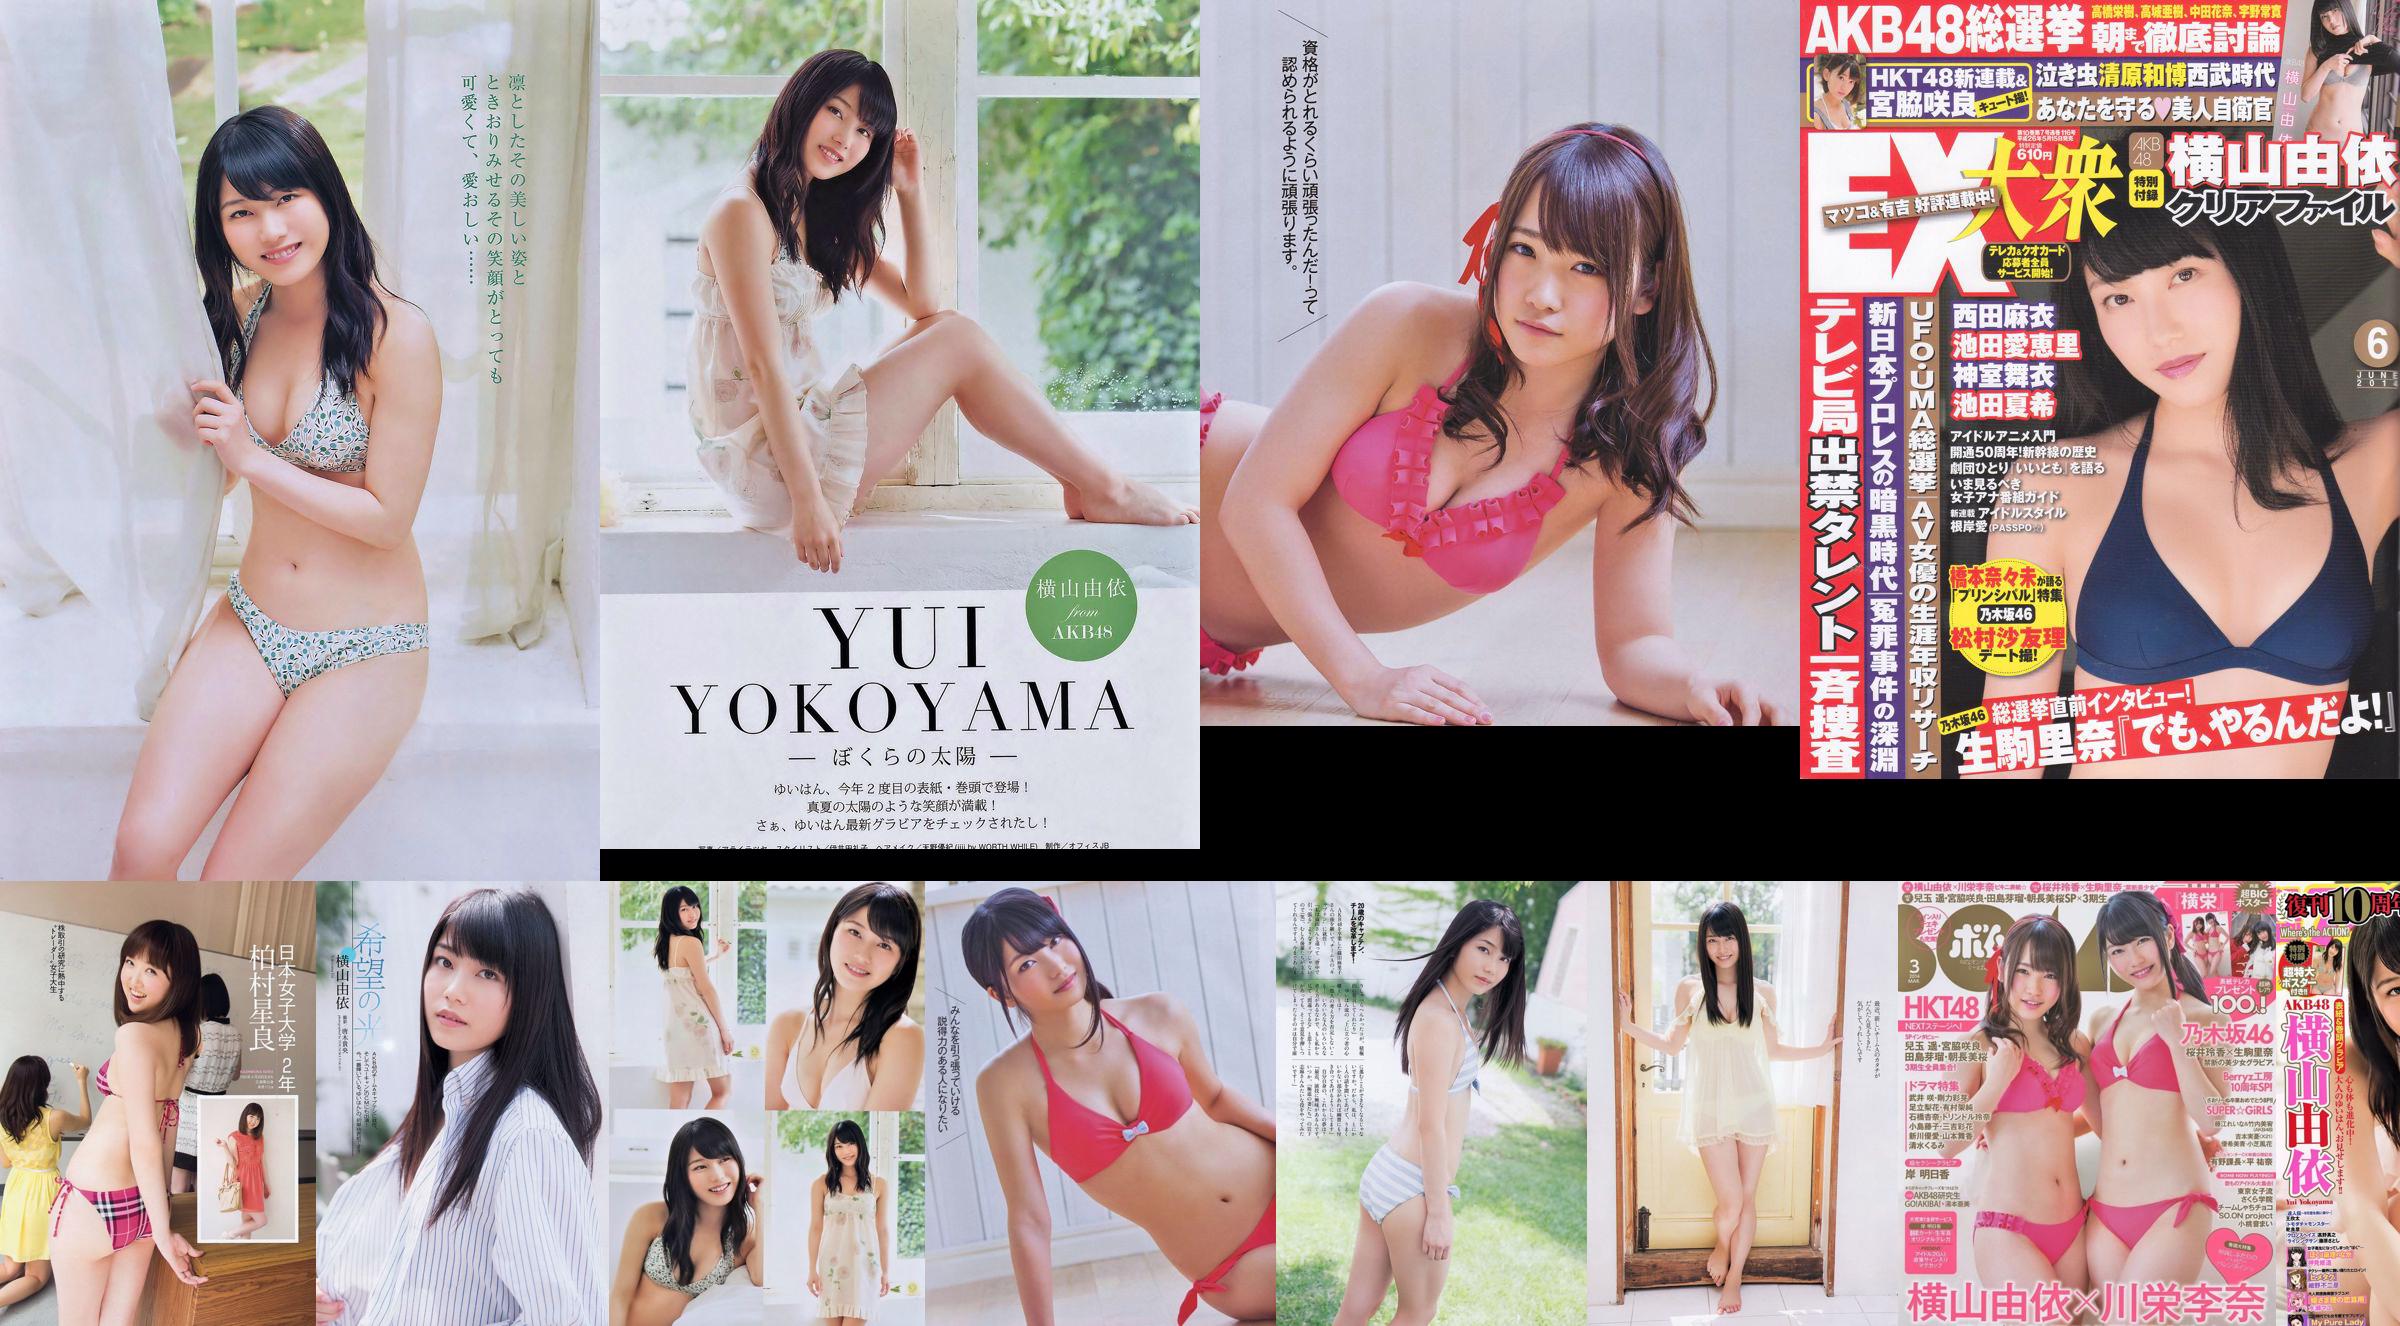 Momoiro Clover Z Yui Yokoyama Yua Shinkawa Mio Uema Anri Sugihara Kumi Yagami [Weekly Playboy] 2013 No.20 Photo Moshi No.51d000 Страница 1